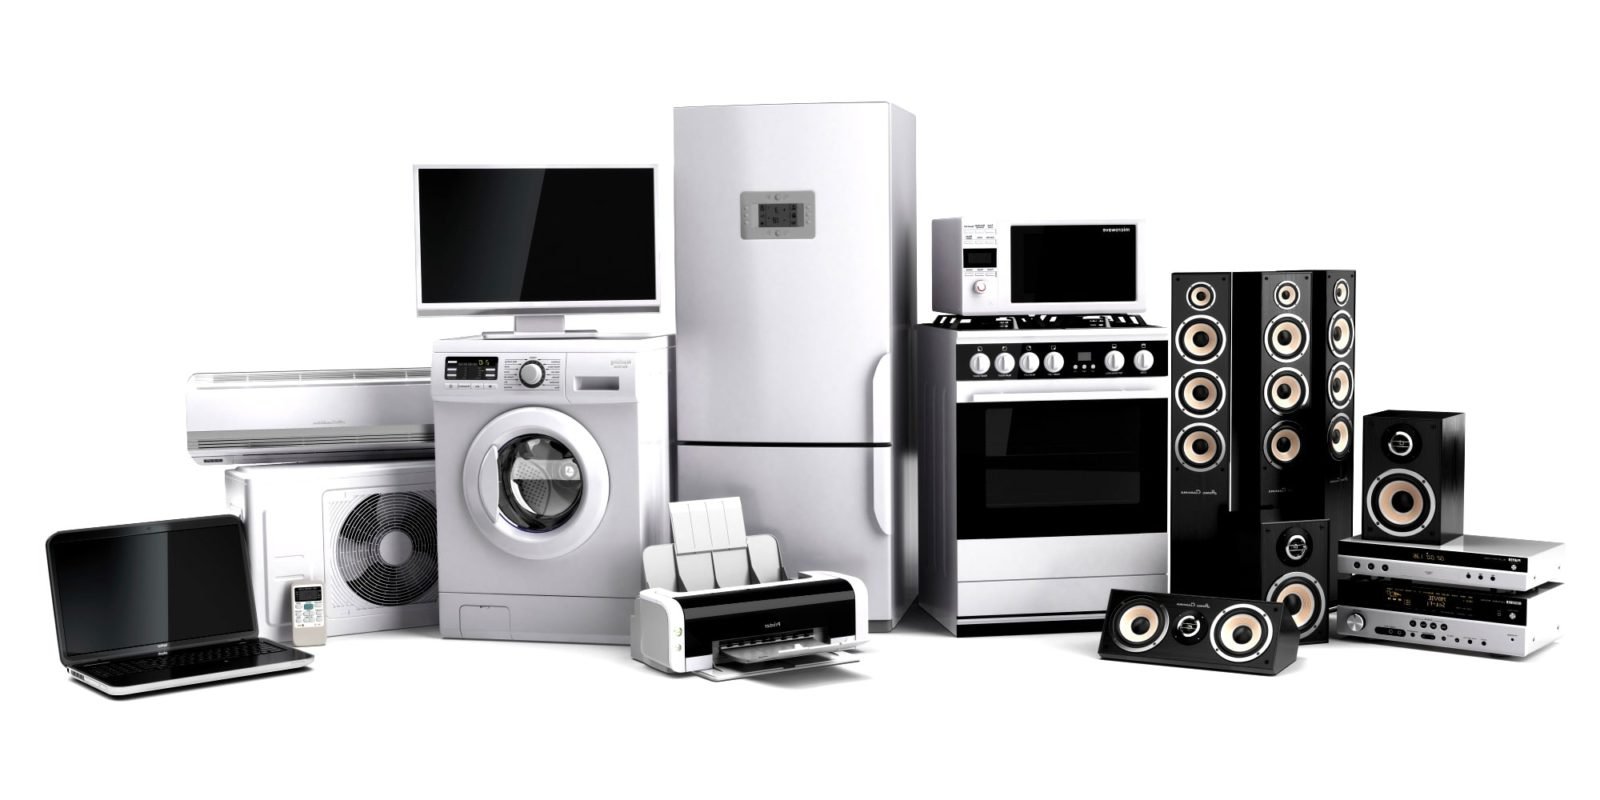 БТиЭ -  Бытовая техника и электроника - Home Appliance - Household appliances and electronics